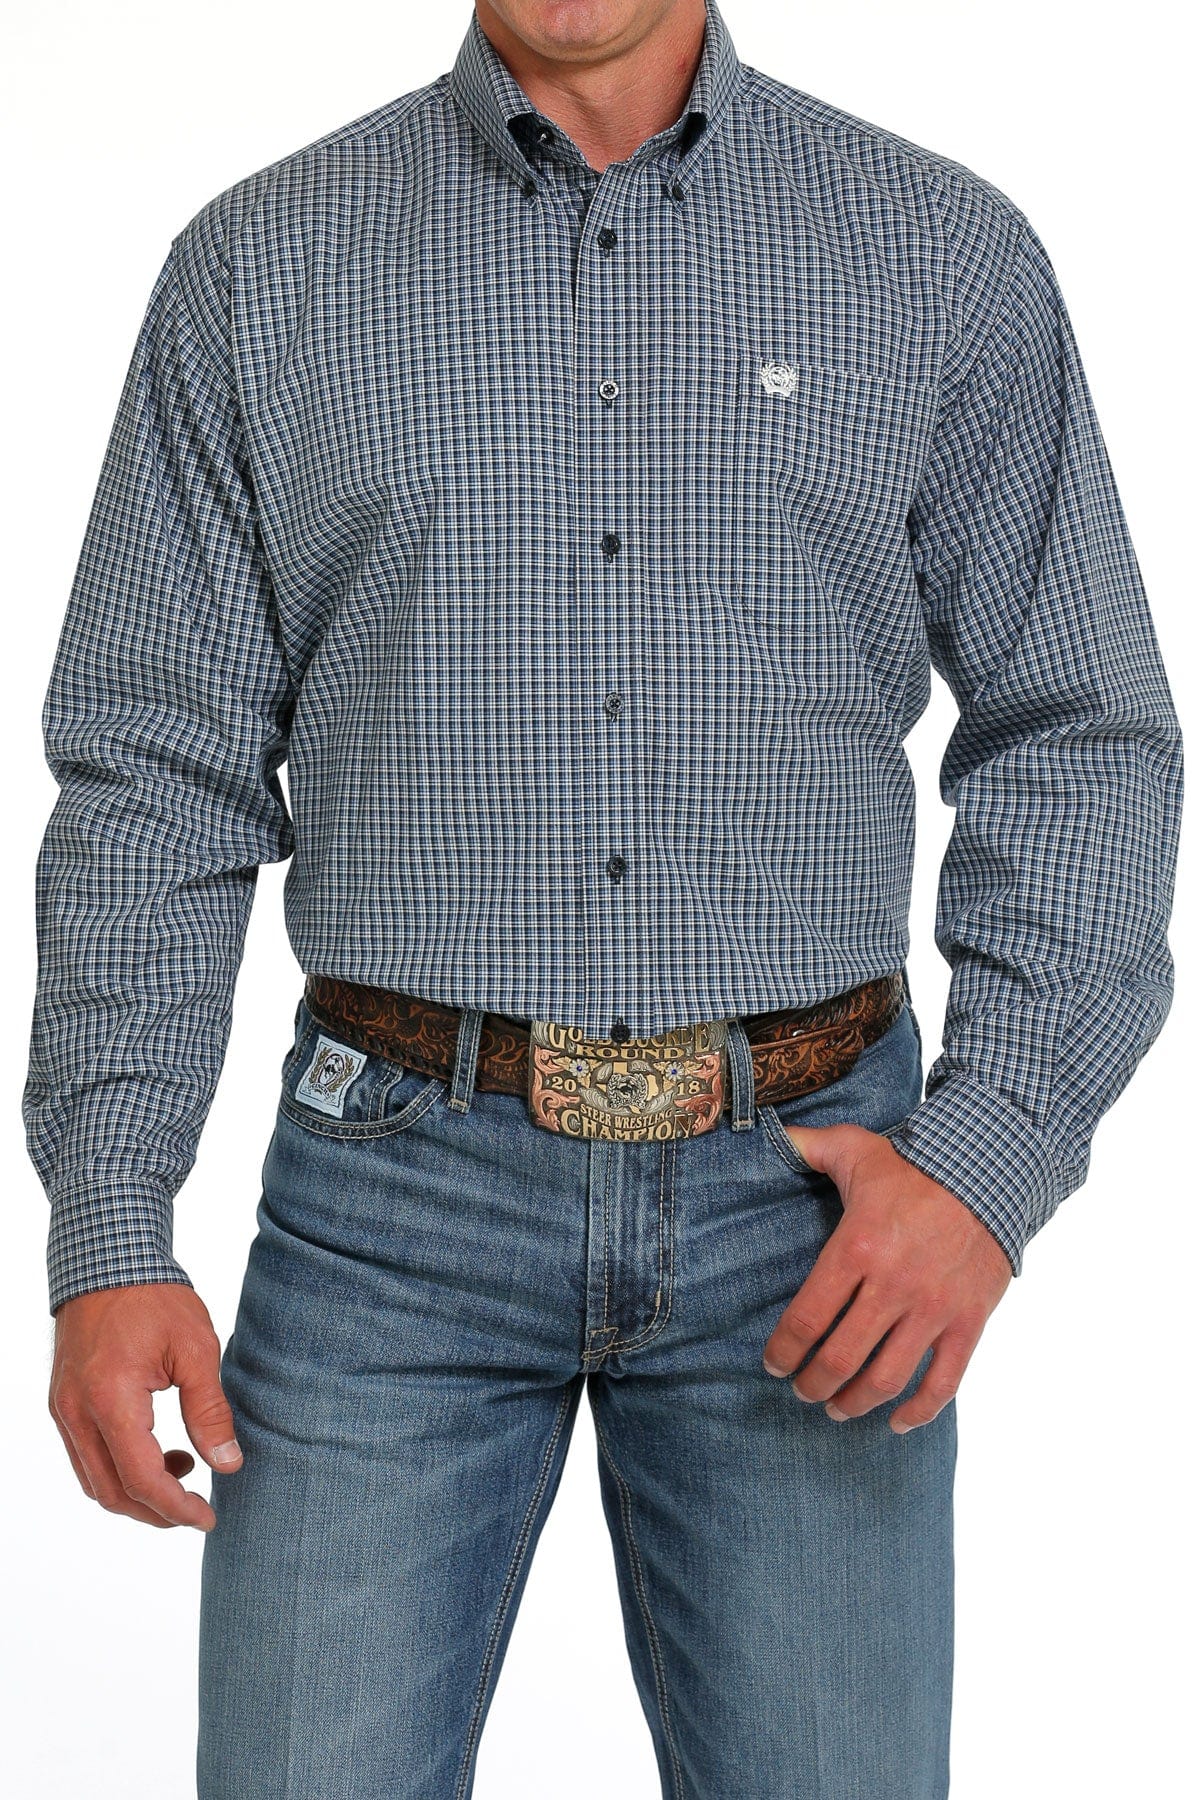 CINCH Mens - Shirt - Woven - Long Sleeve - Button MTW1105632